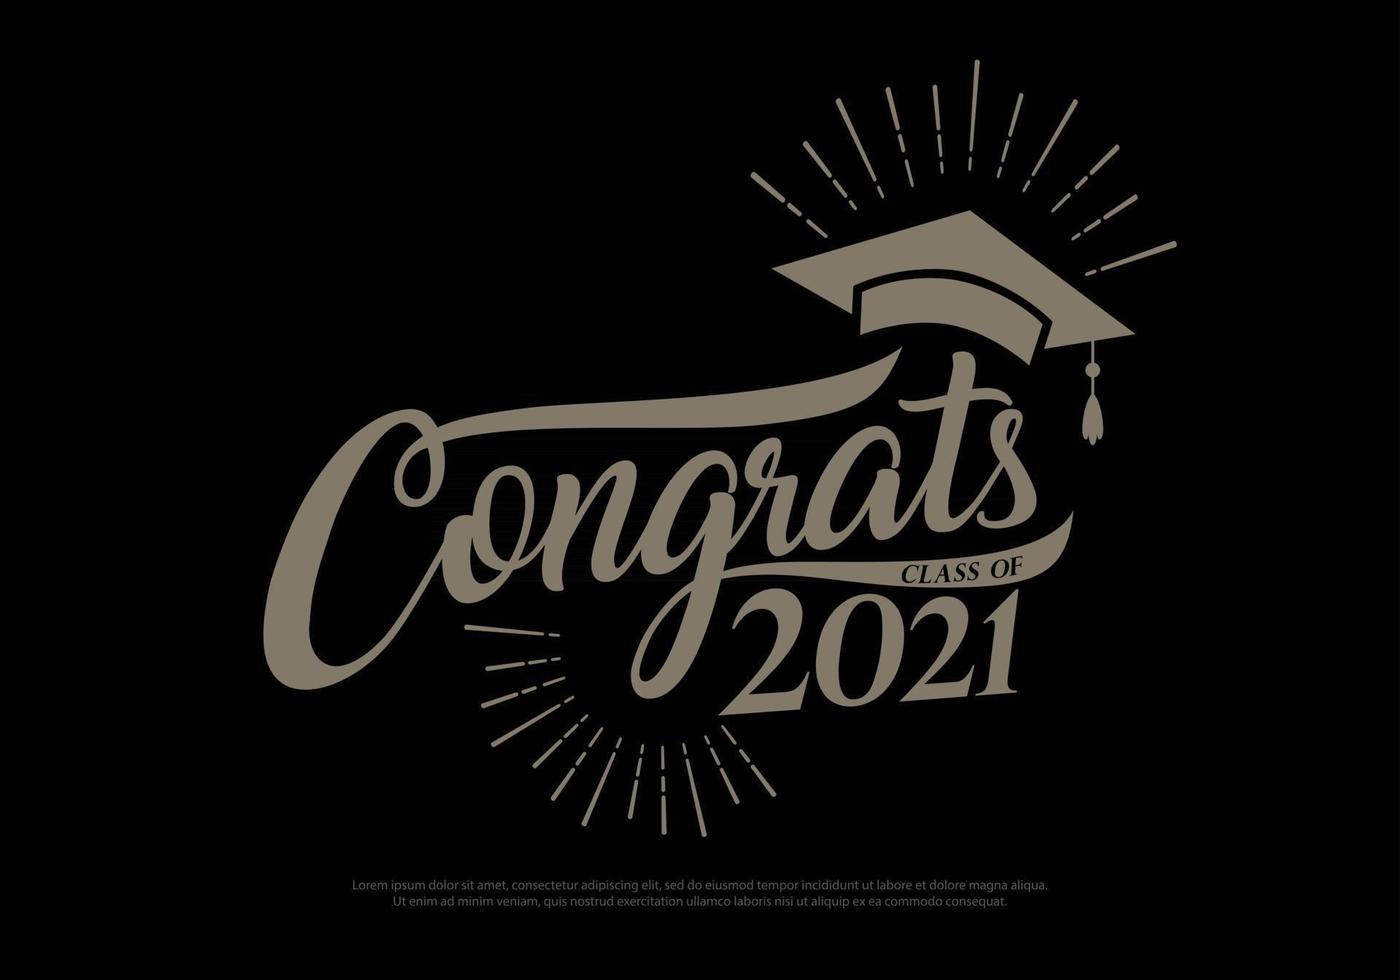 parabéns classe de 2021 graduados conceito vintage. preto, ouro, coleção de logotipos de formatura em estilo retro vetor